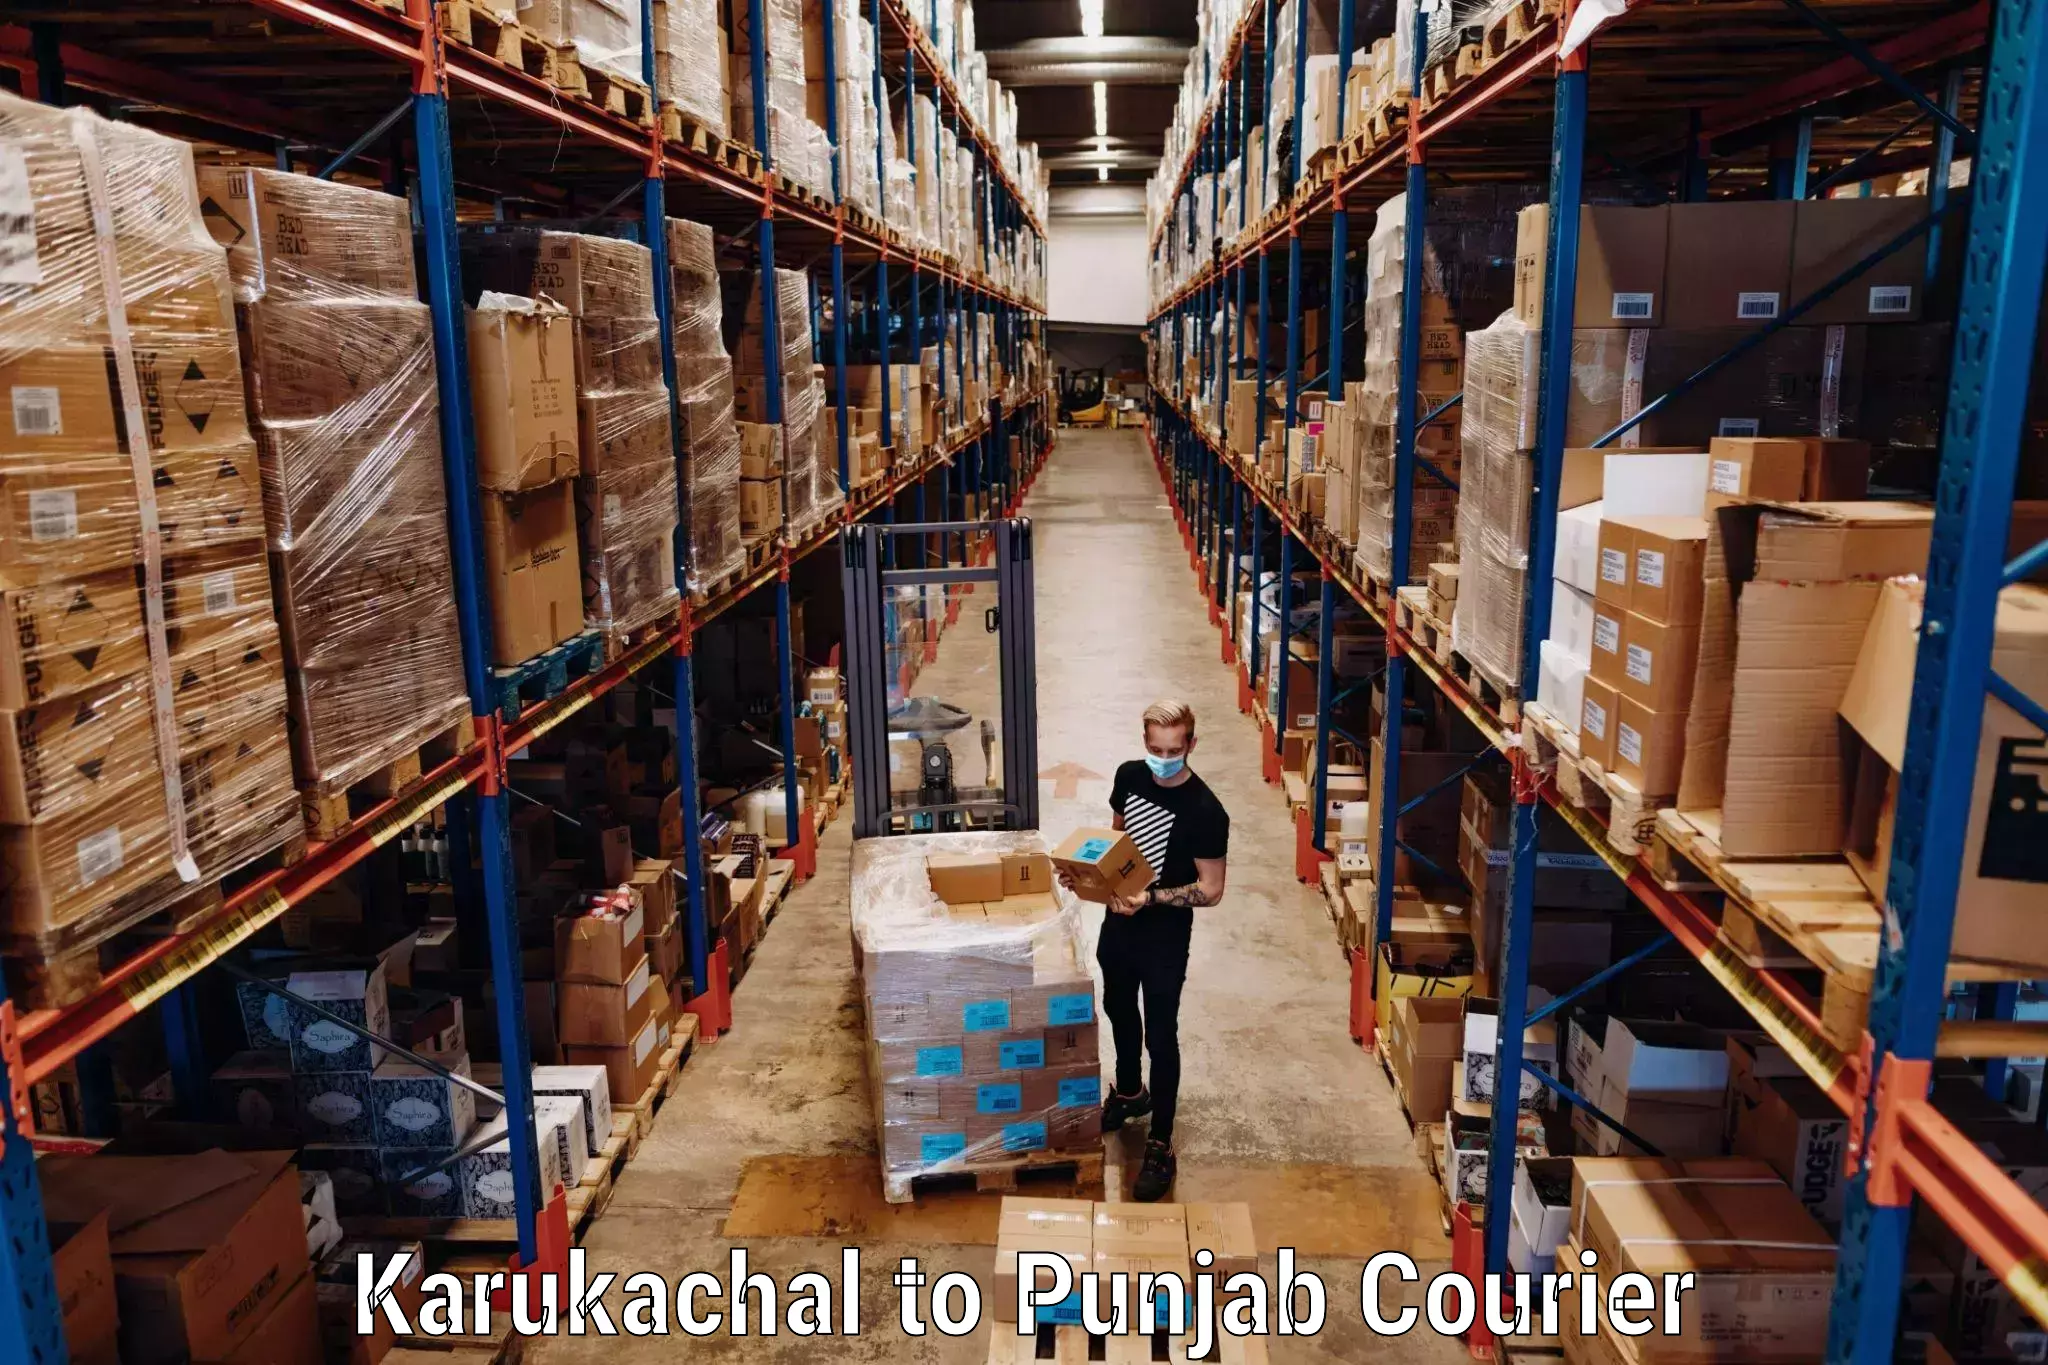 Baggage transport calculator Karukachal to Punjab